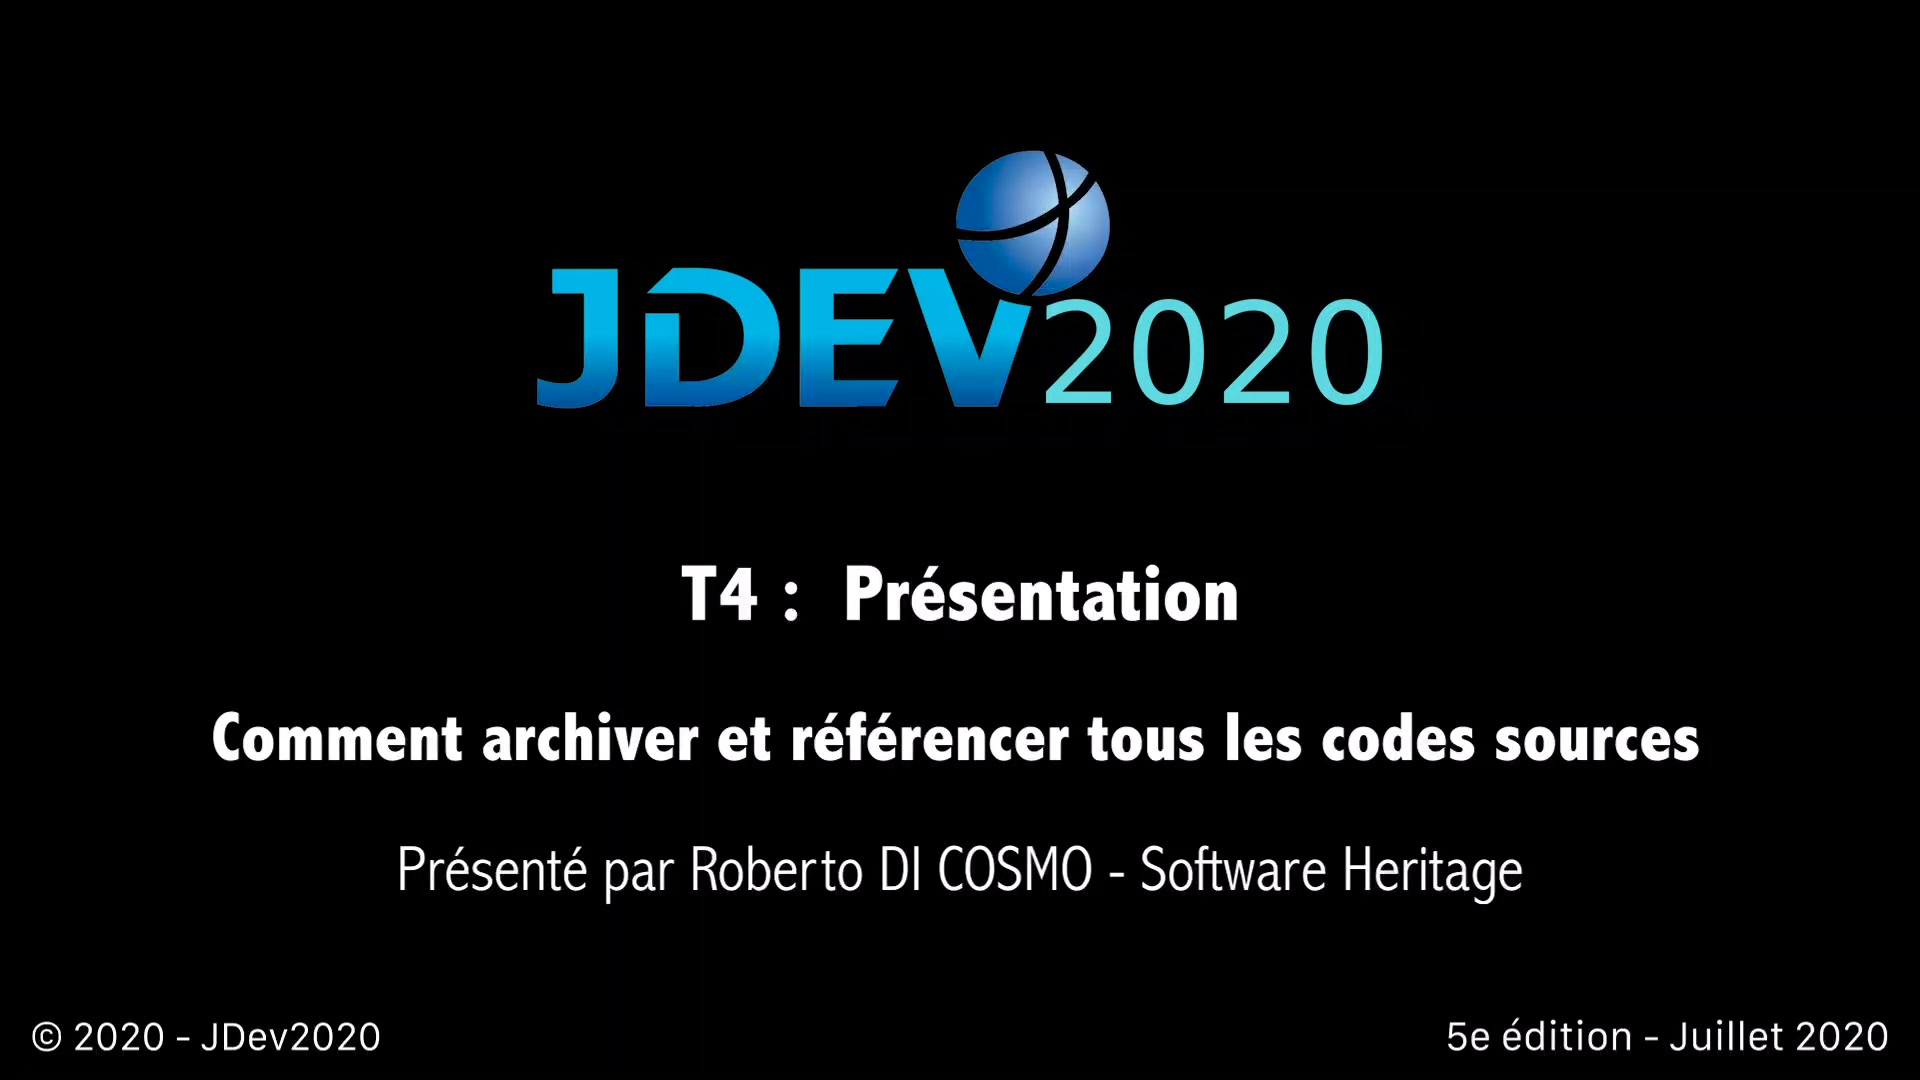 JDev2020 : T4 : Comment archiver et référencer tous les codes sources